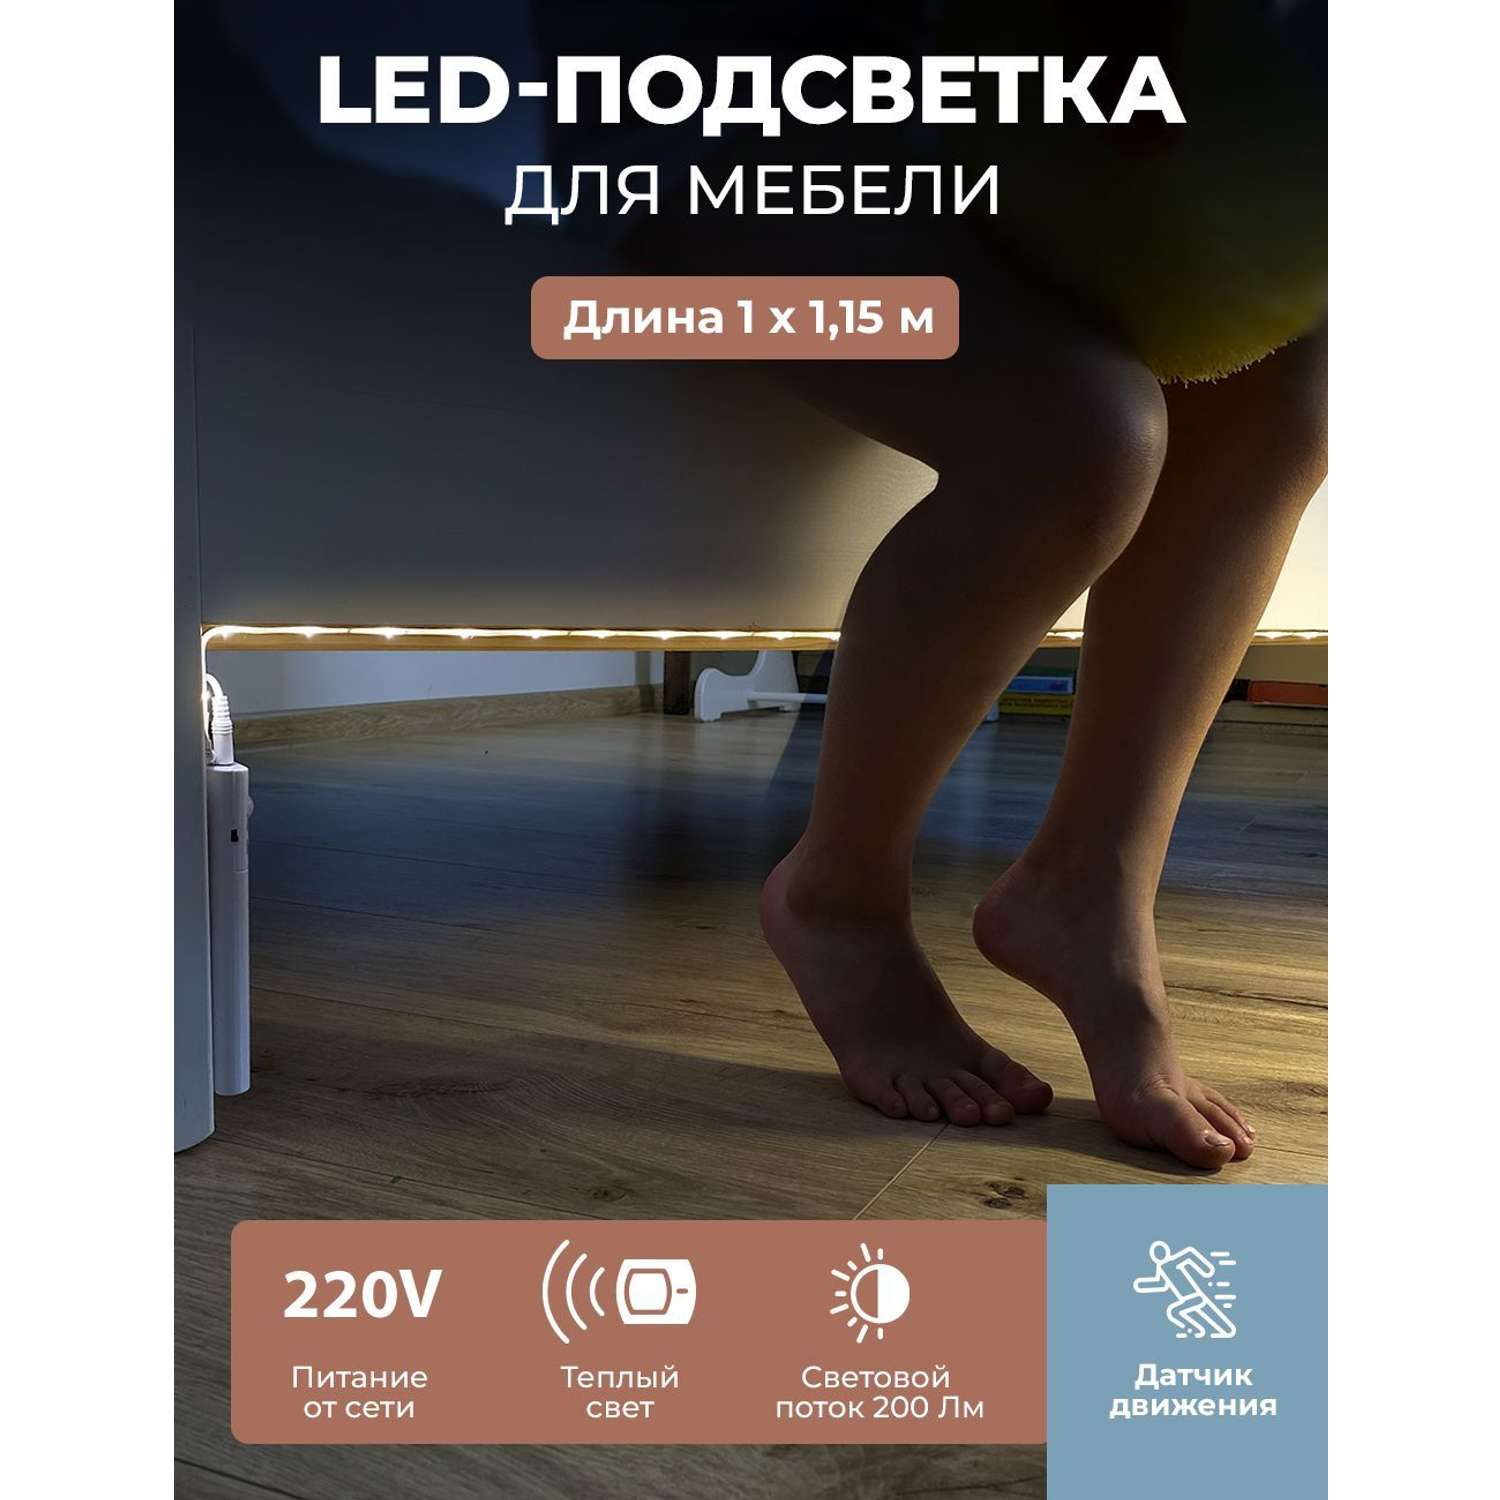 LED подсветка ГЕЛЕОС светодиодная лента для двуспальной кровати лента 2x1.2м комплект 220V с датчиком движения - фото 3